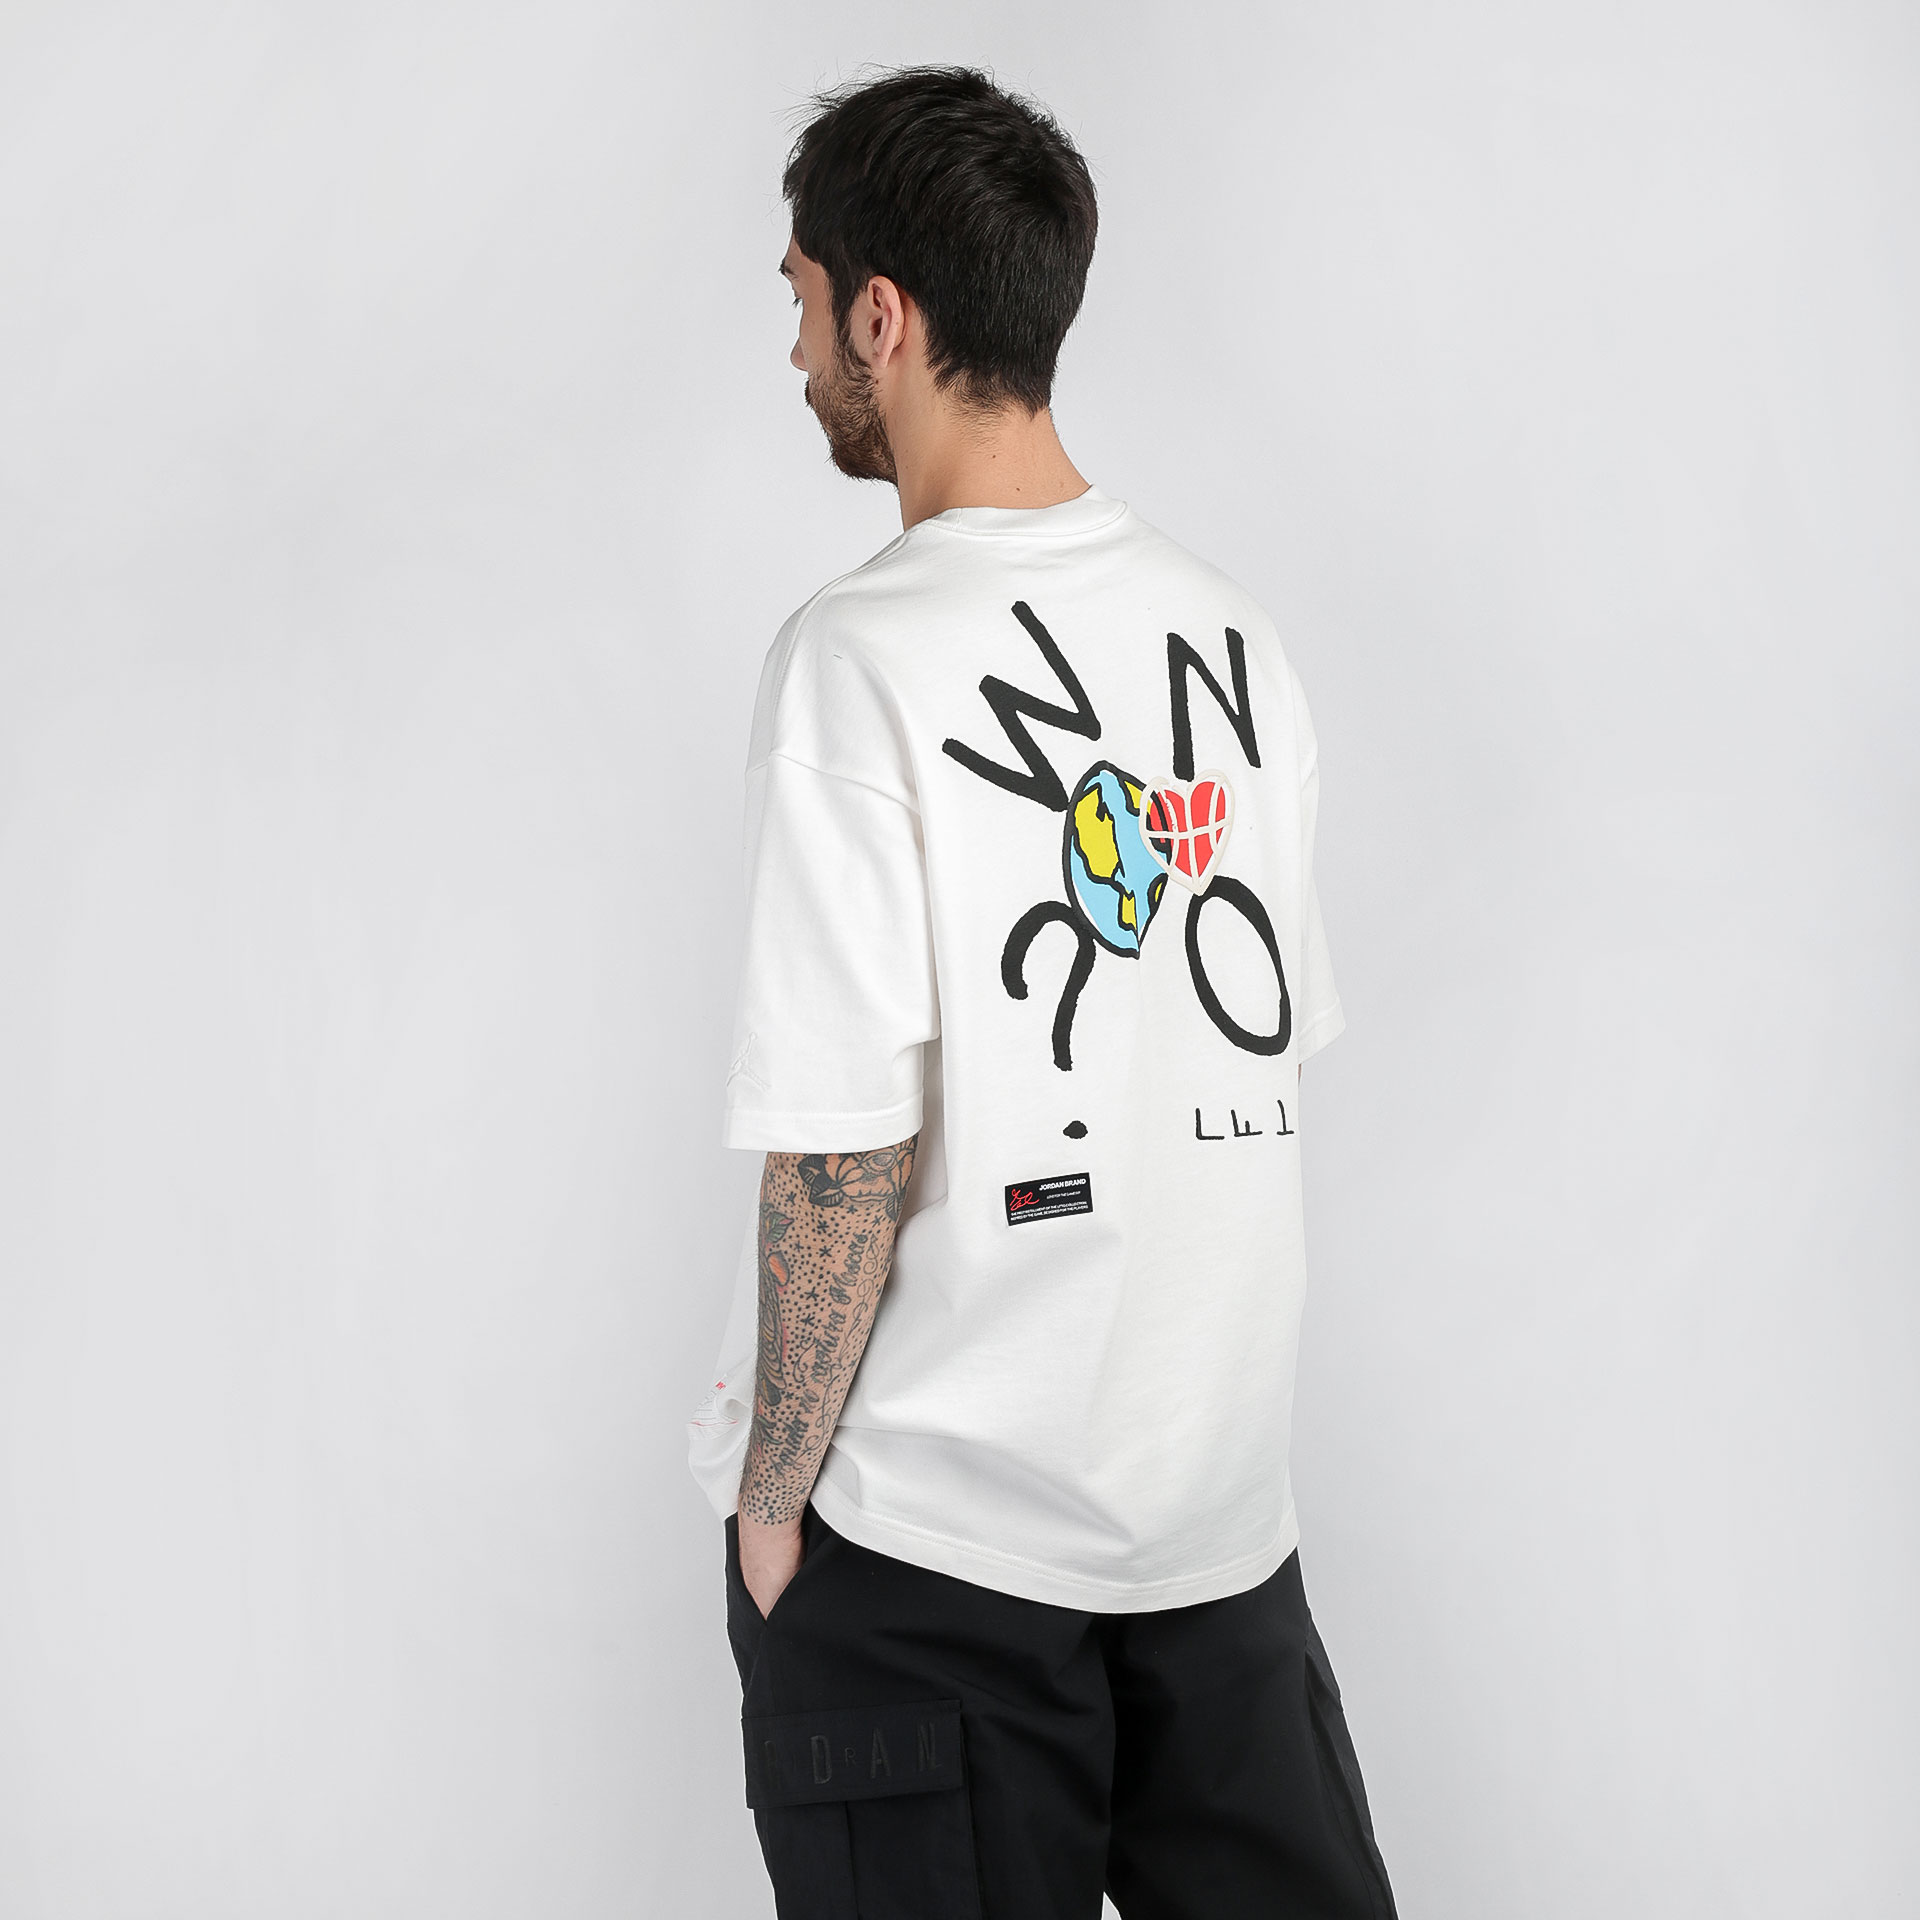 мужская белая футболка Jordan T-shirt  Why Not? CW4257-100 - цена, описание, фото 2